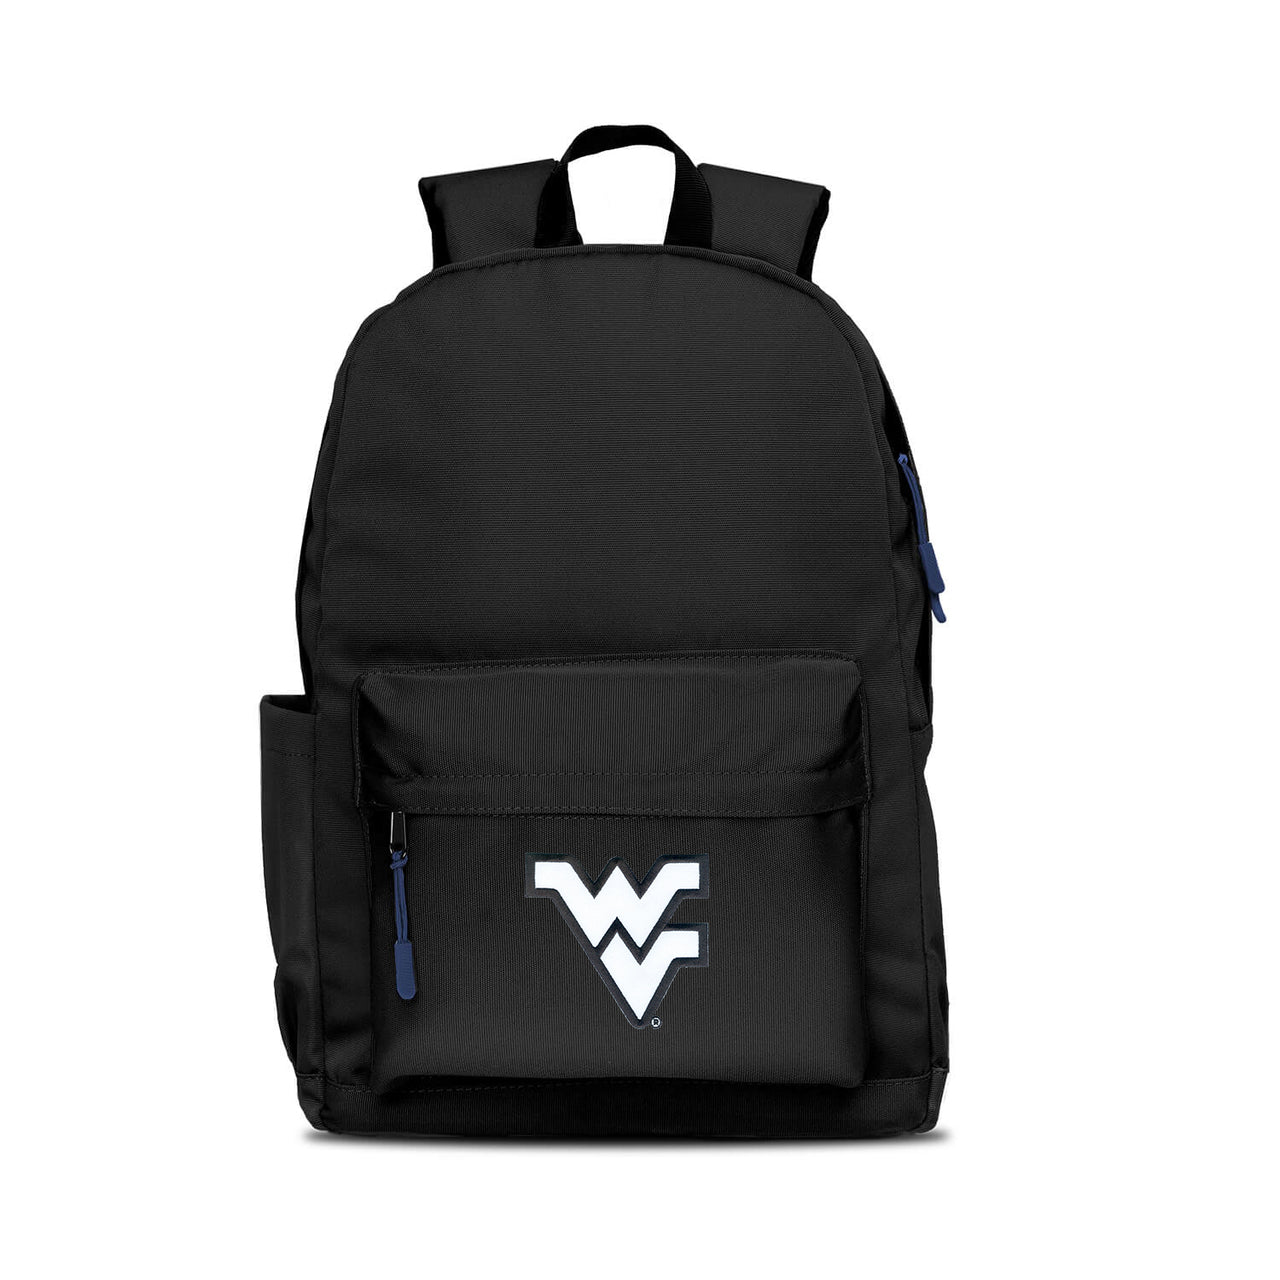 West Virginia Mountaineers Campus Laptop Backpack- Black